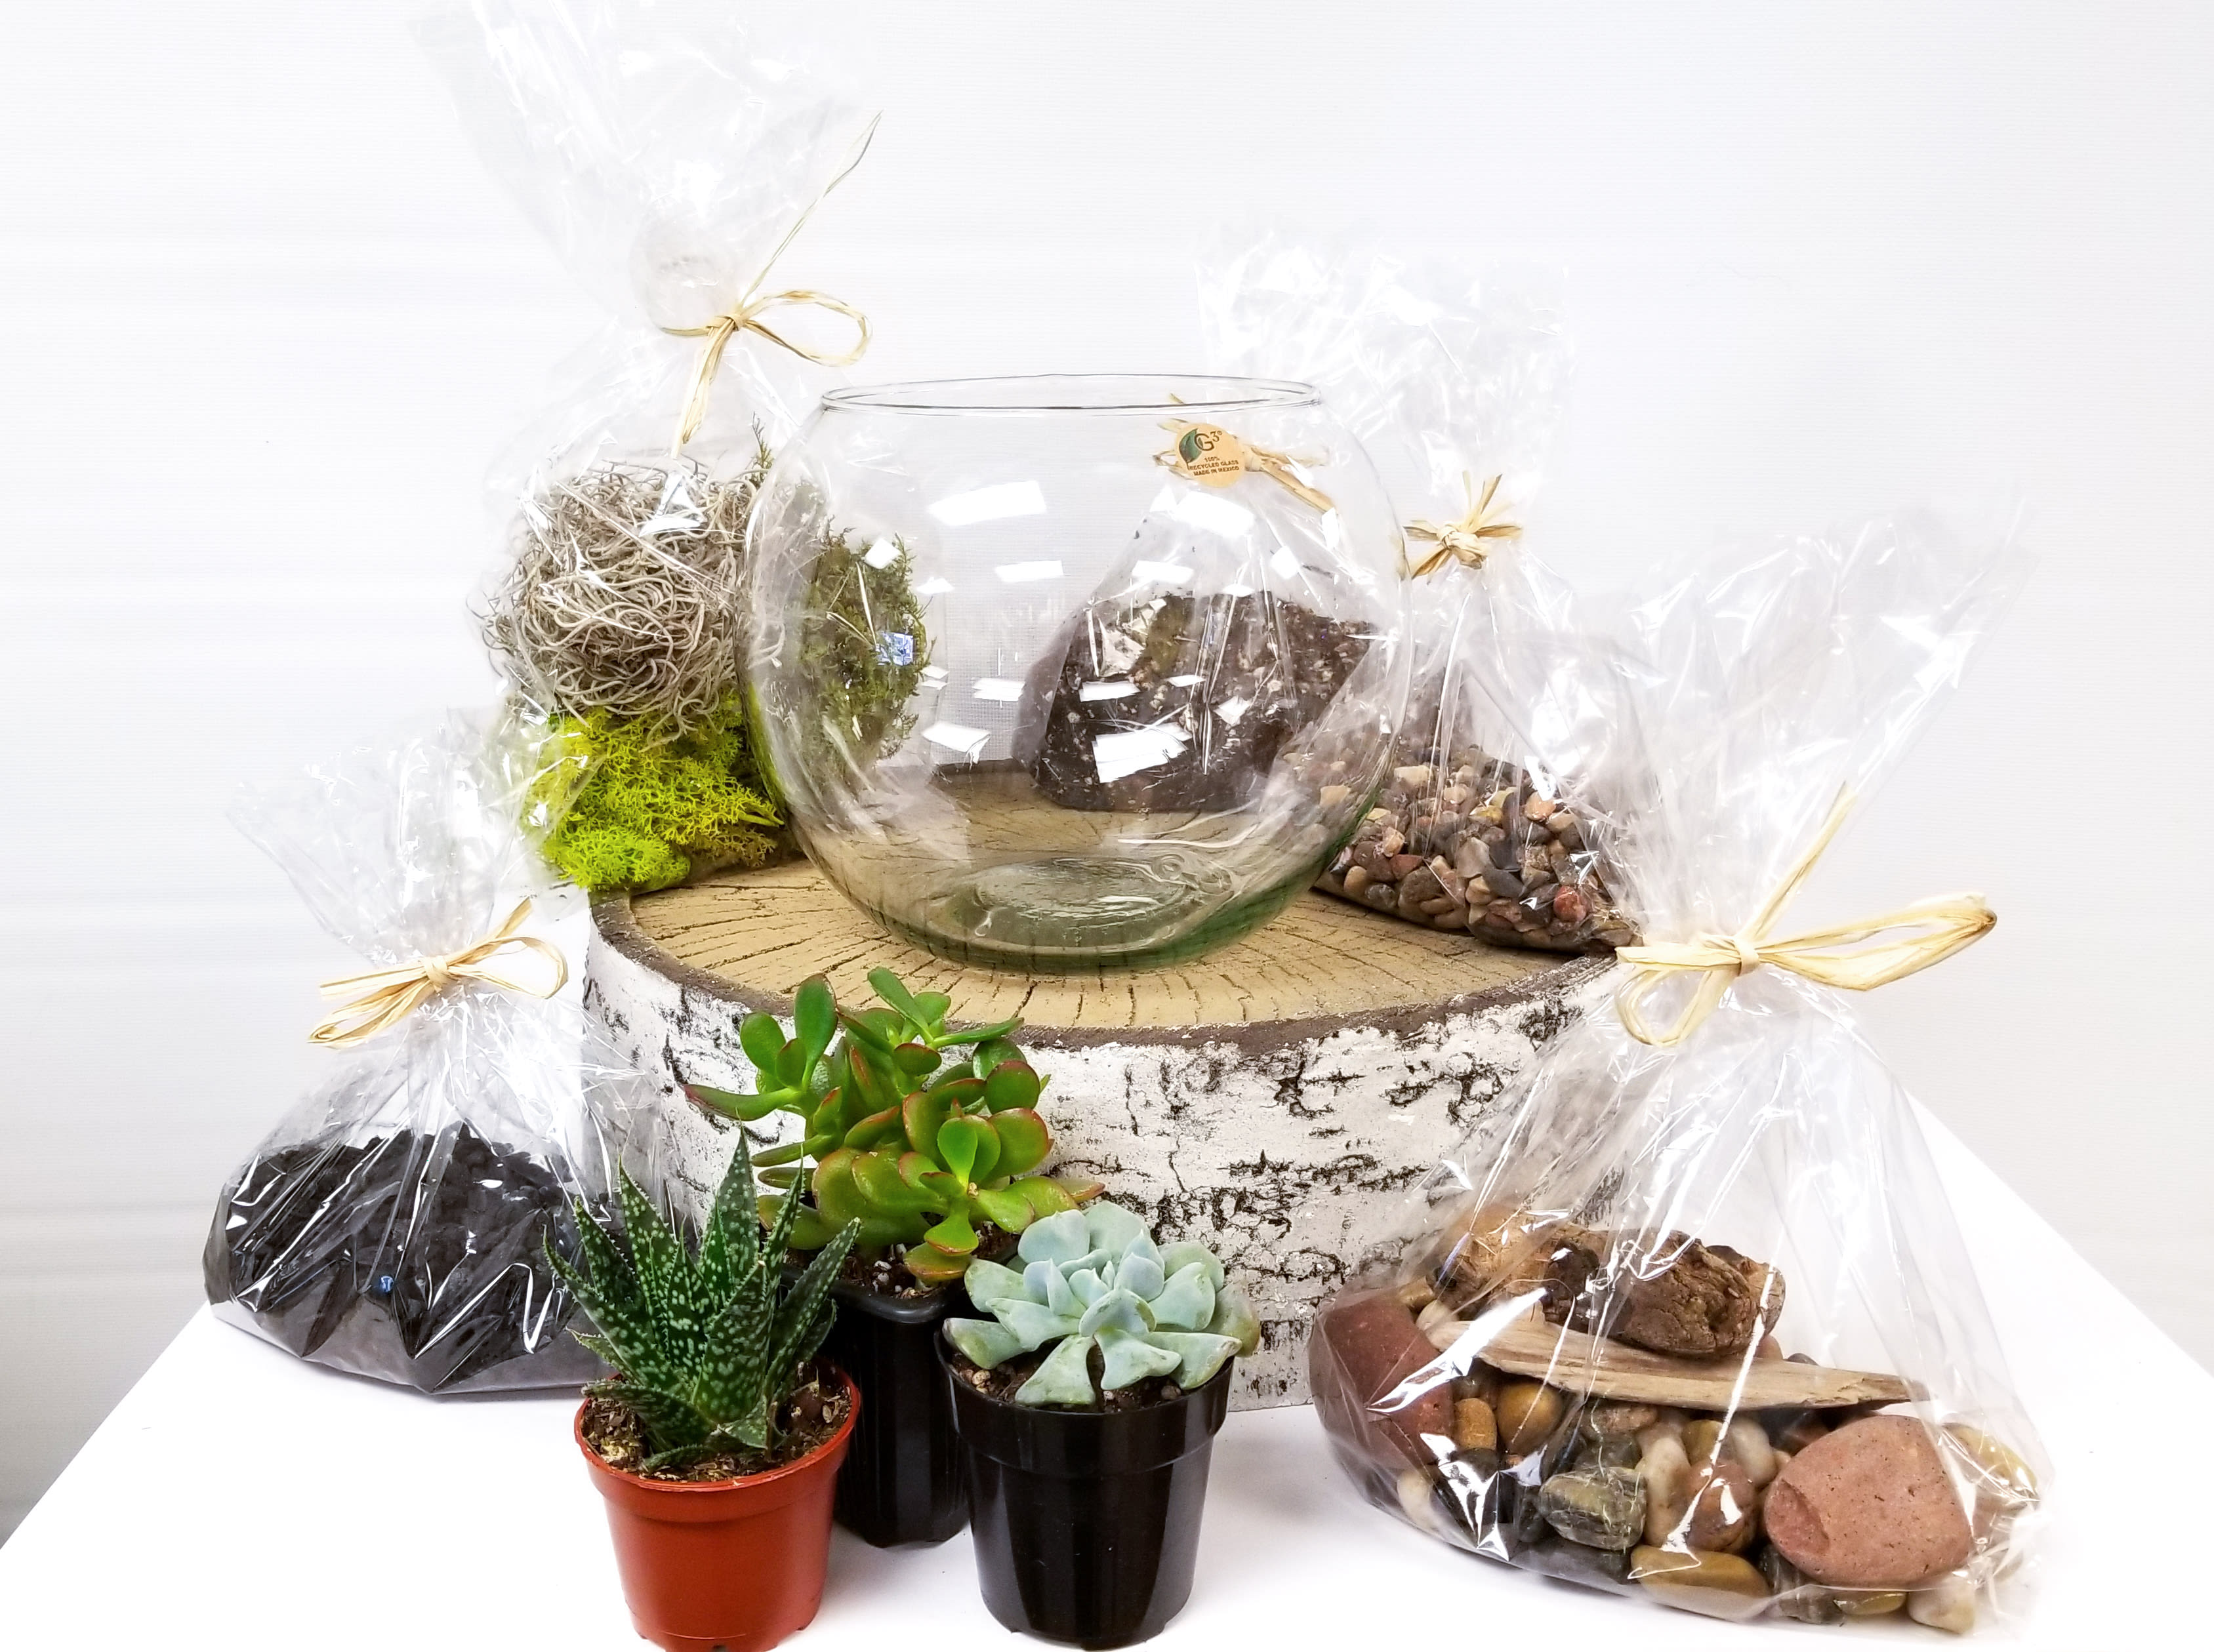 Complete Terrarium Building Kit - Succulent Plant Kit